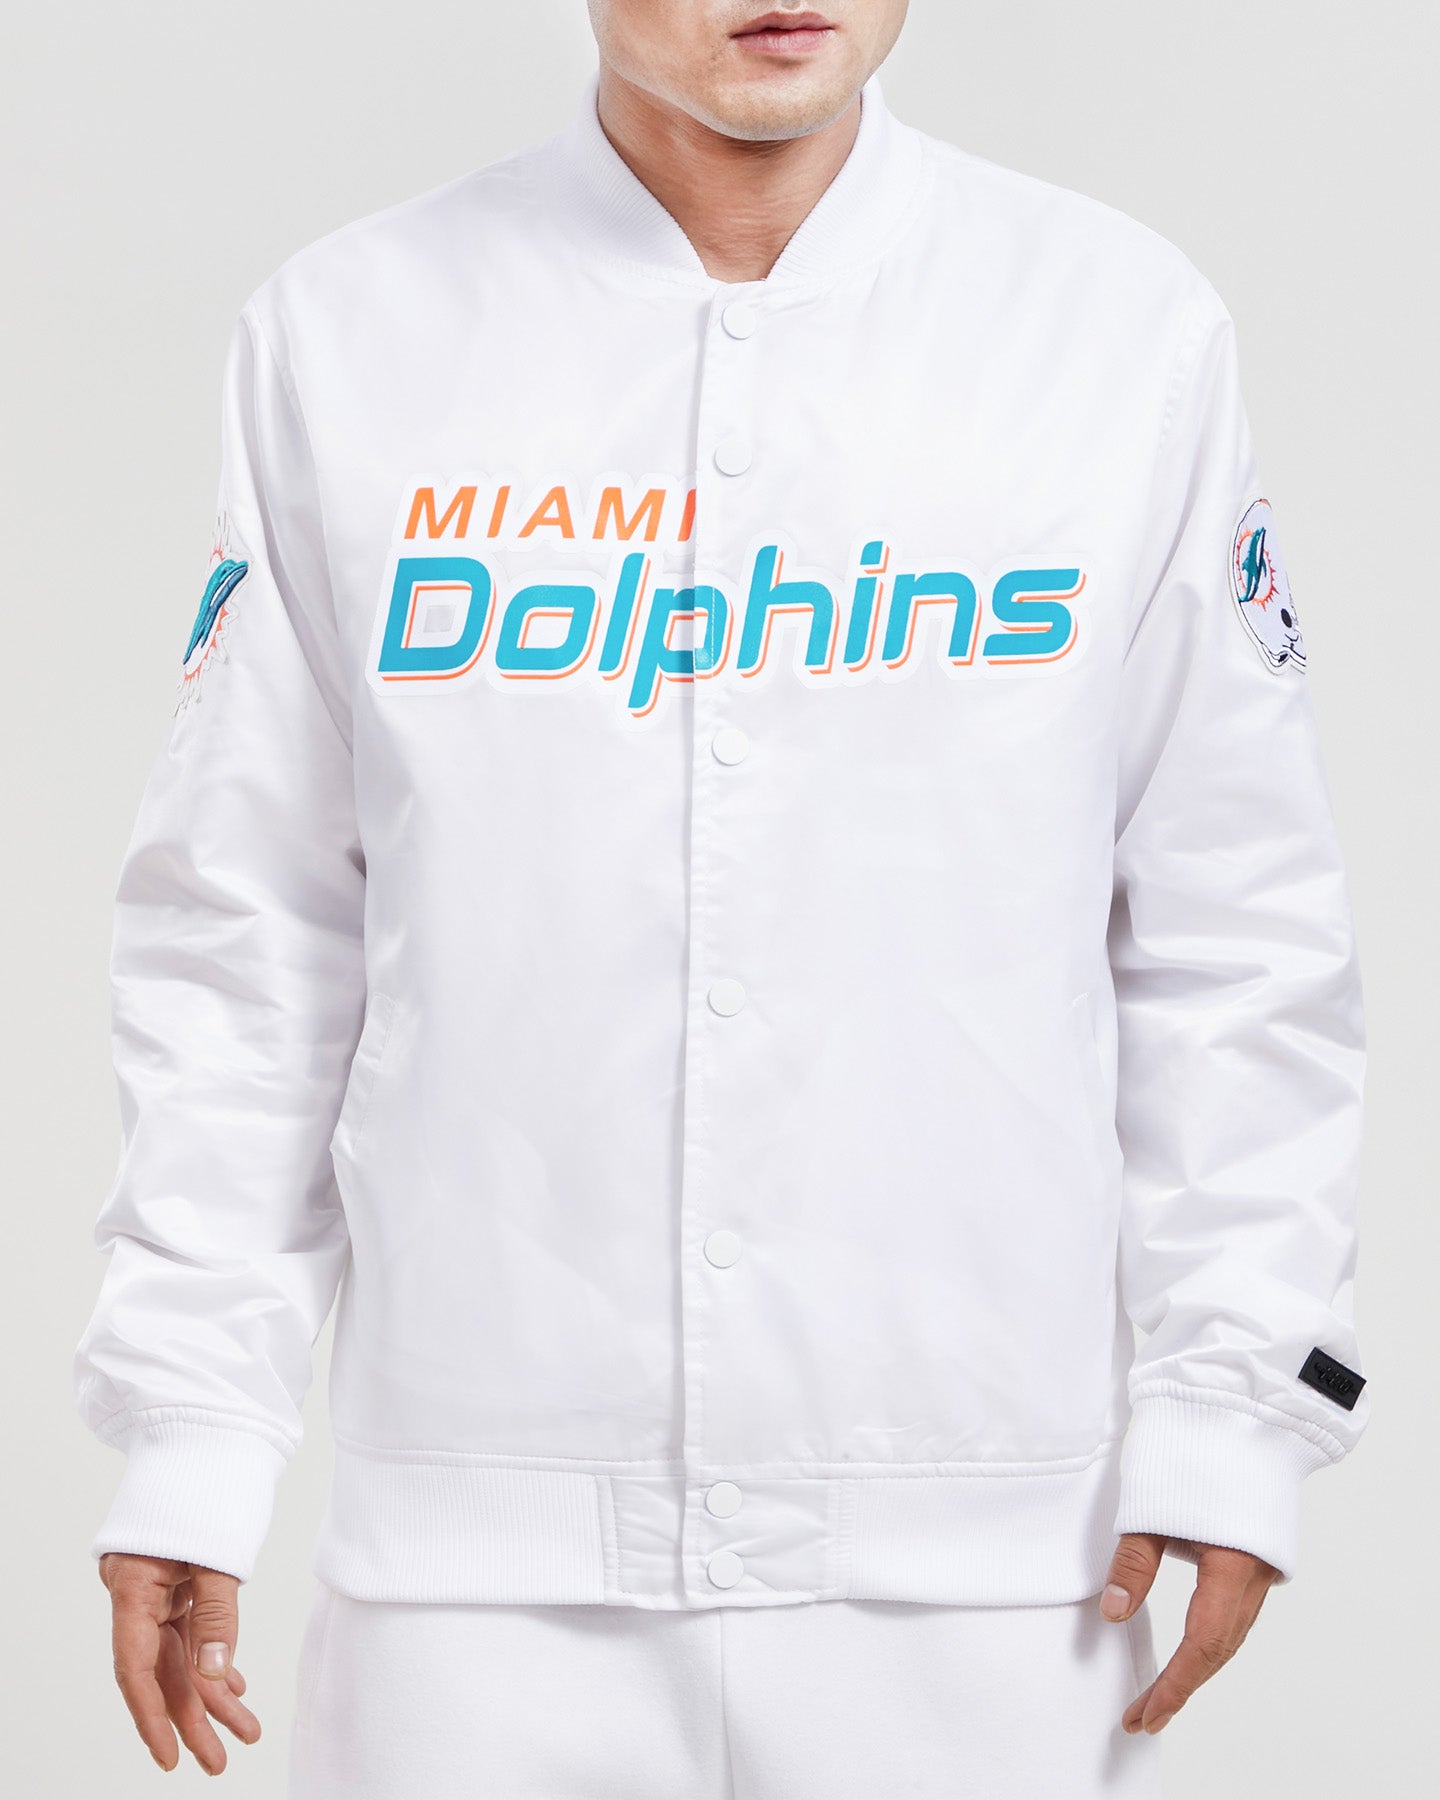 miami dolphins shop near me